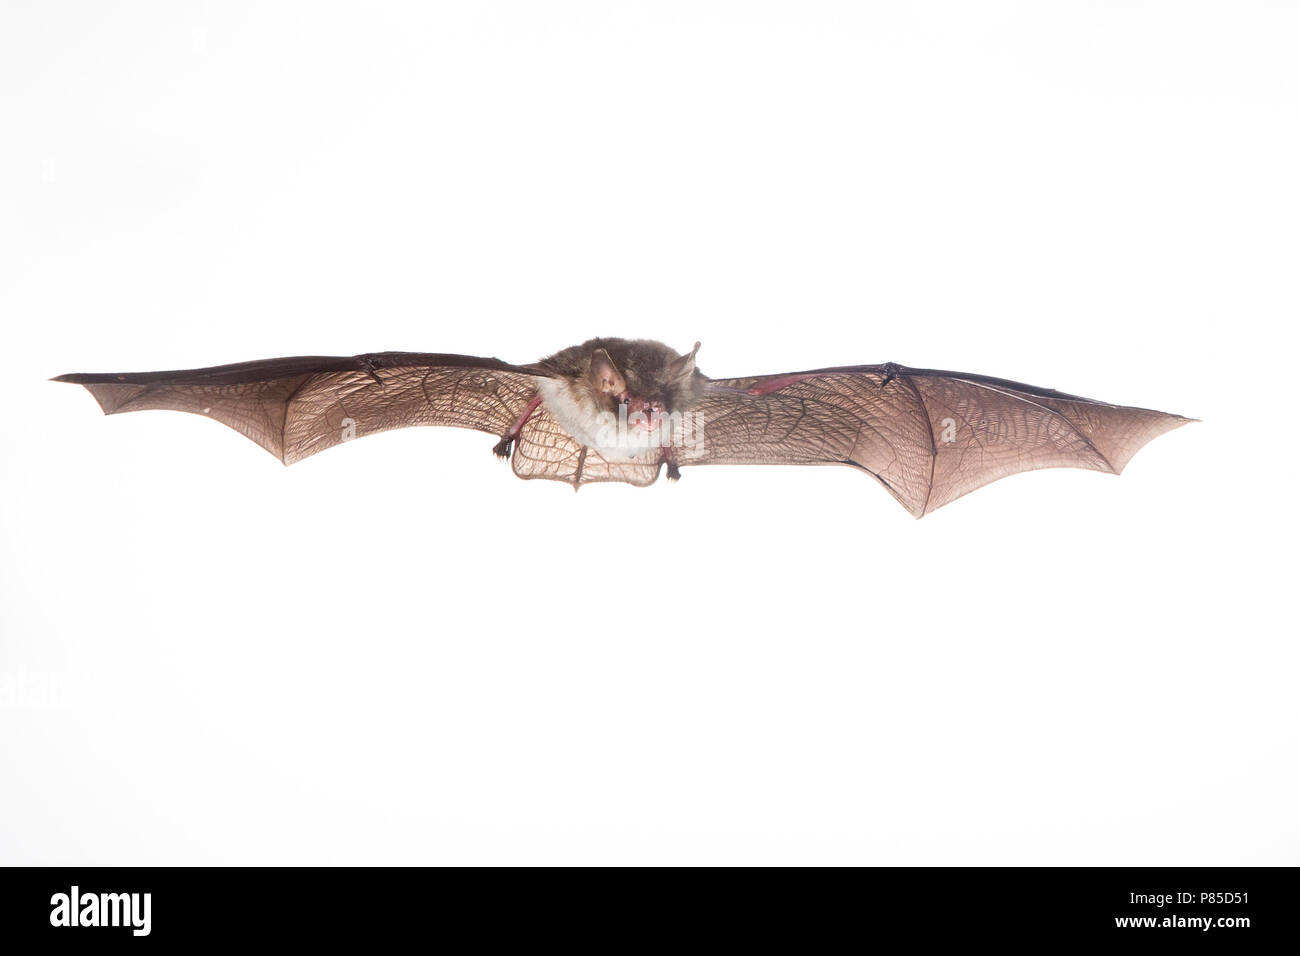 Franjestaart vliegend, Natterer's bat flying Stock Photo